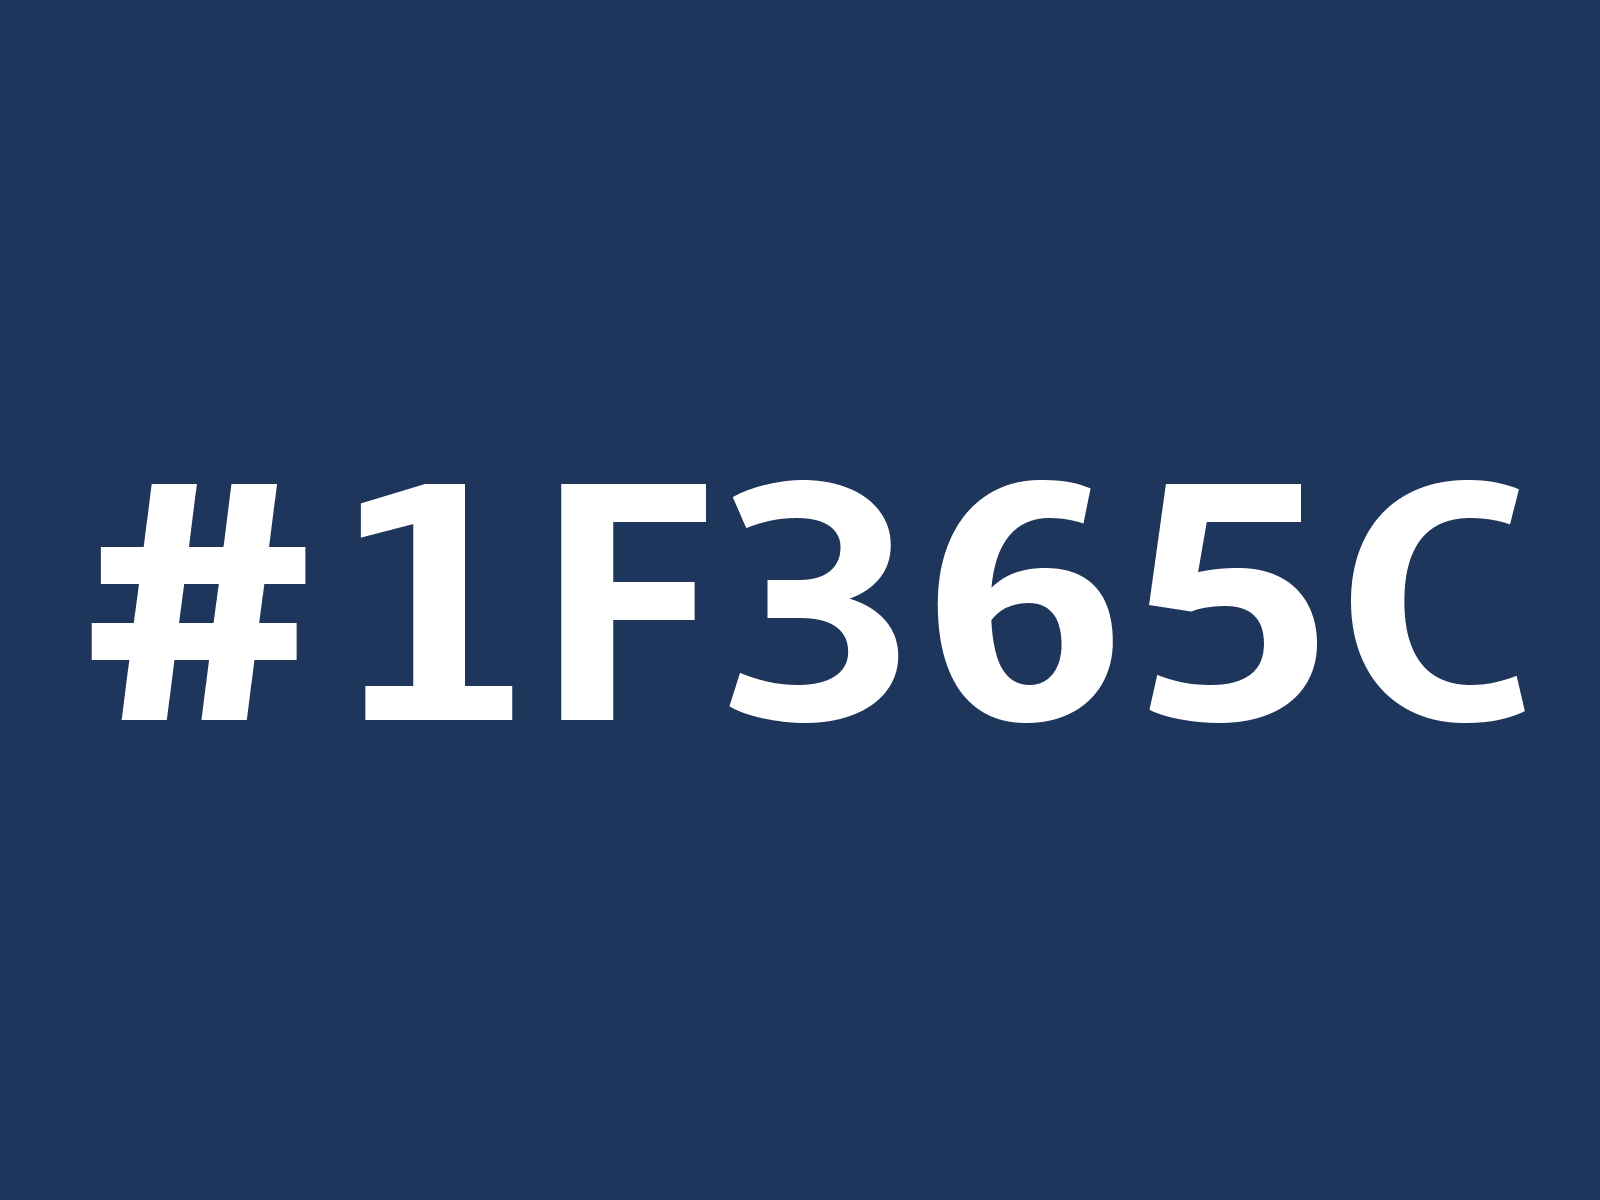 1F84FF Hex Color, RGB: 31, 132, 255